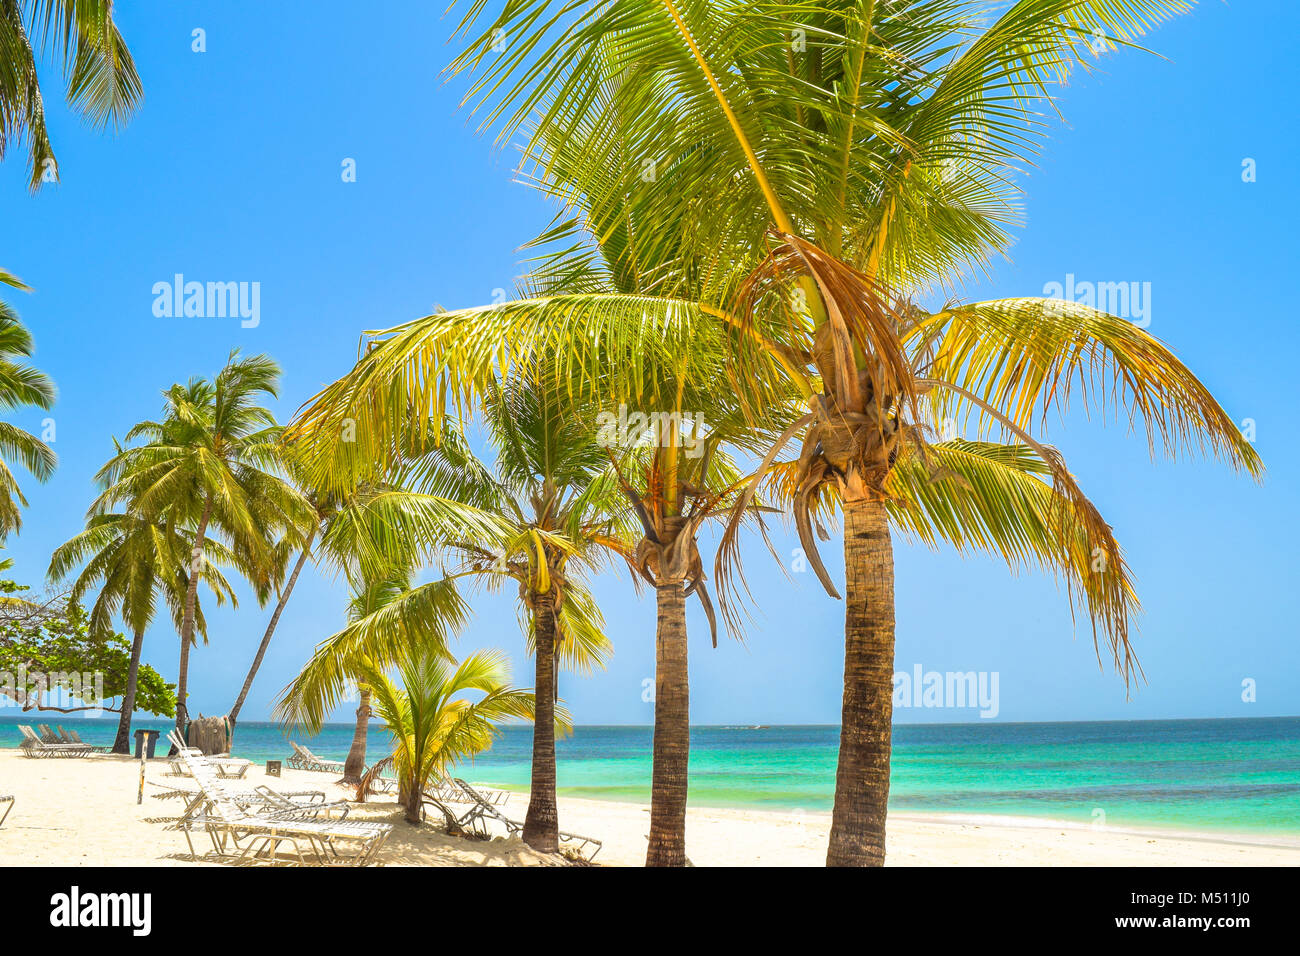 Schöner Strand mit Palmen, Sonnenliegen, blauer Himmel und türkisfarbenem Wasser, der Dominikanischen Republik, Samana, kleine Insel im Karibischen Meer Stockfoto